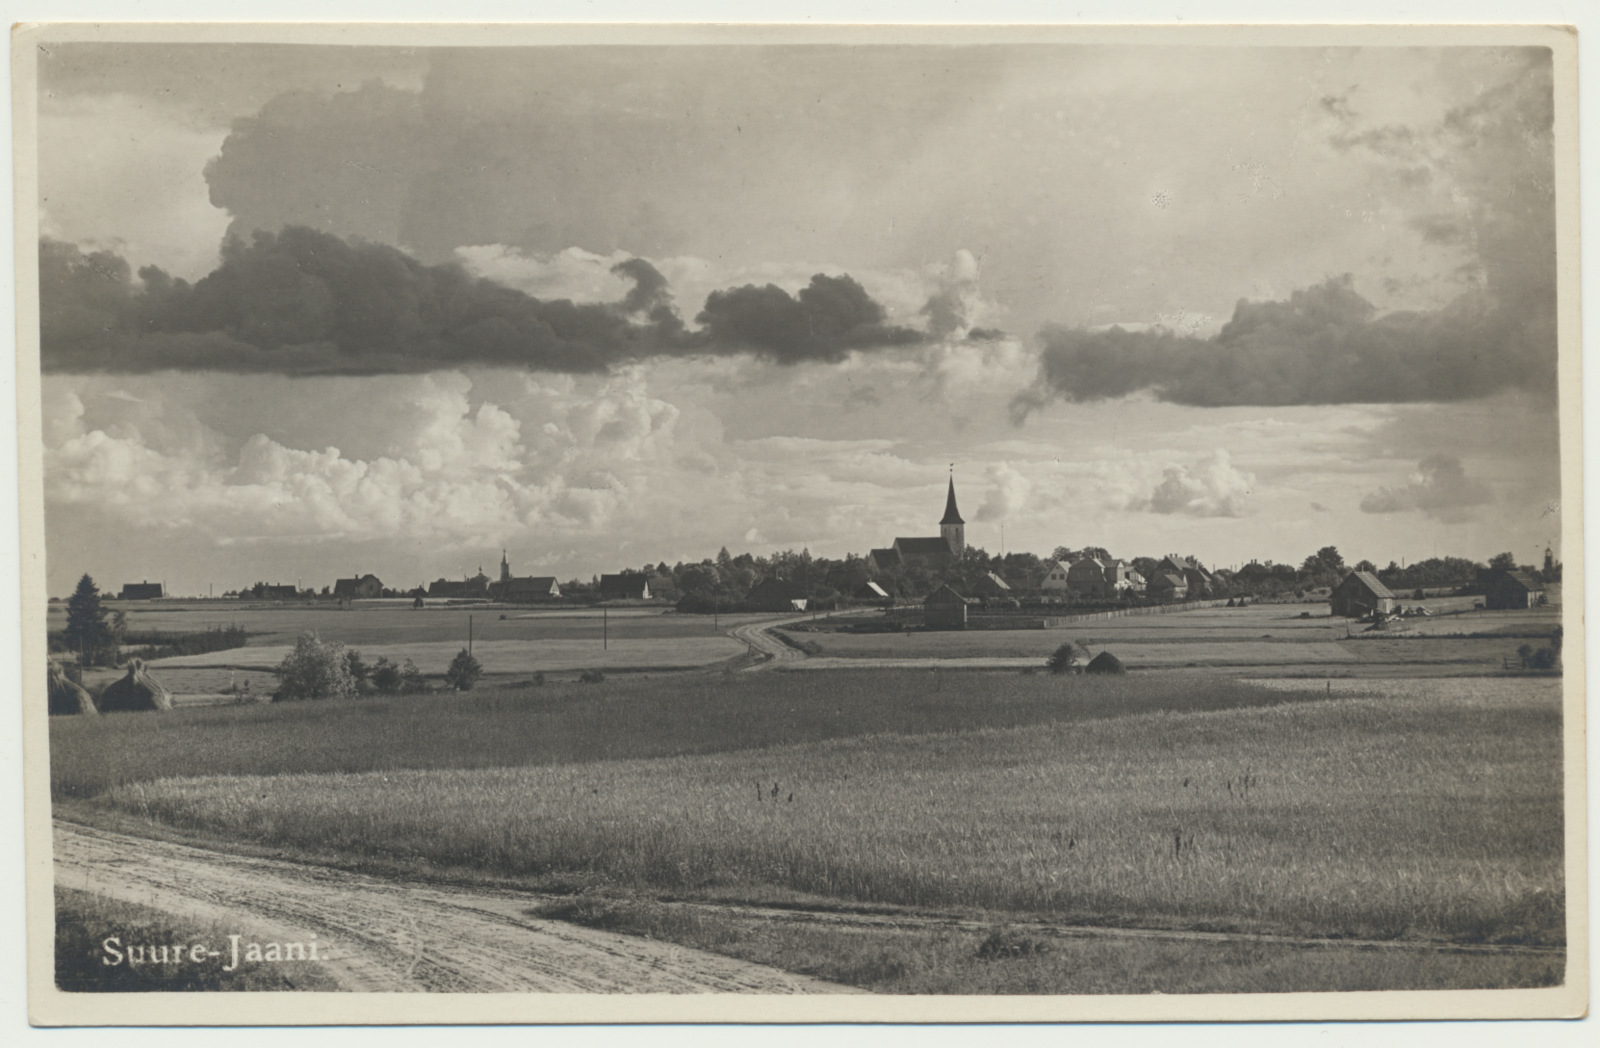 foto, Viljandimaa, Suure-Jaani, üldvaade, u 1930